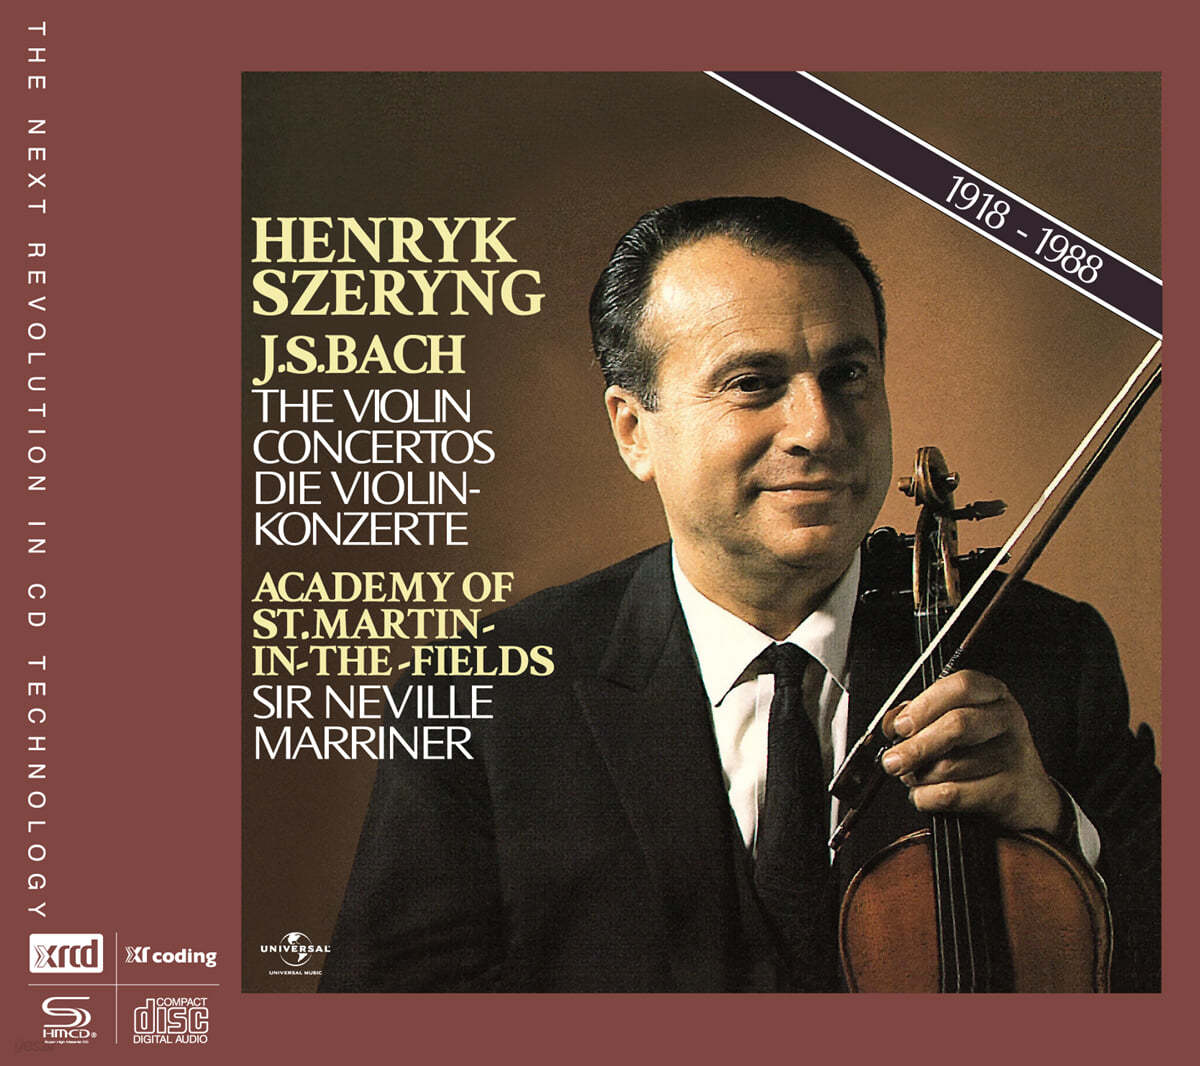 Henryk Szeryng 바흐: 바이올린 협주곡 (Bach The Violin Concerto)